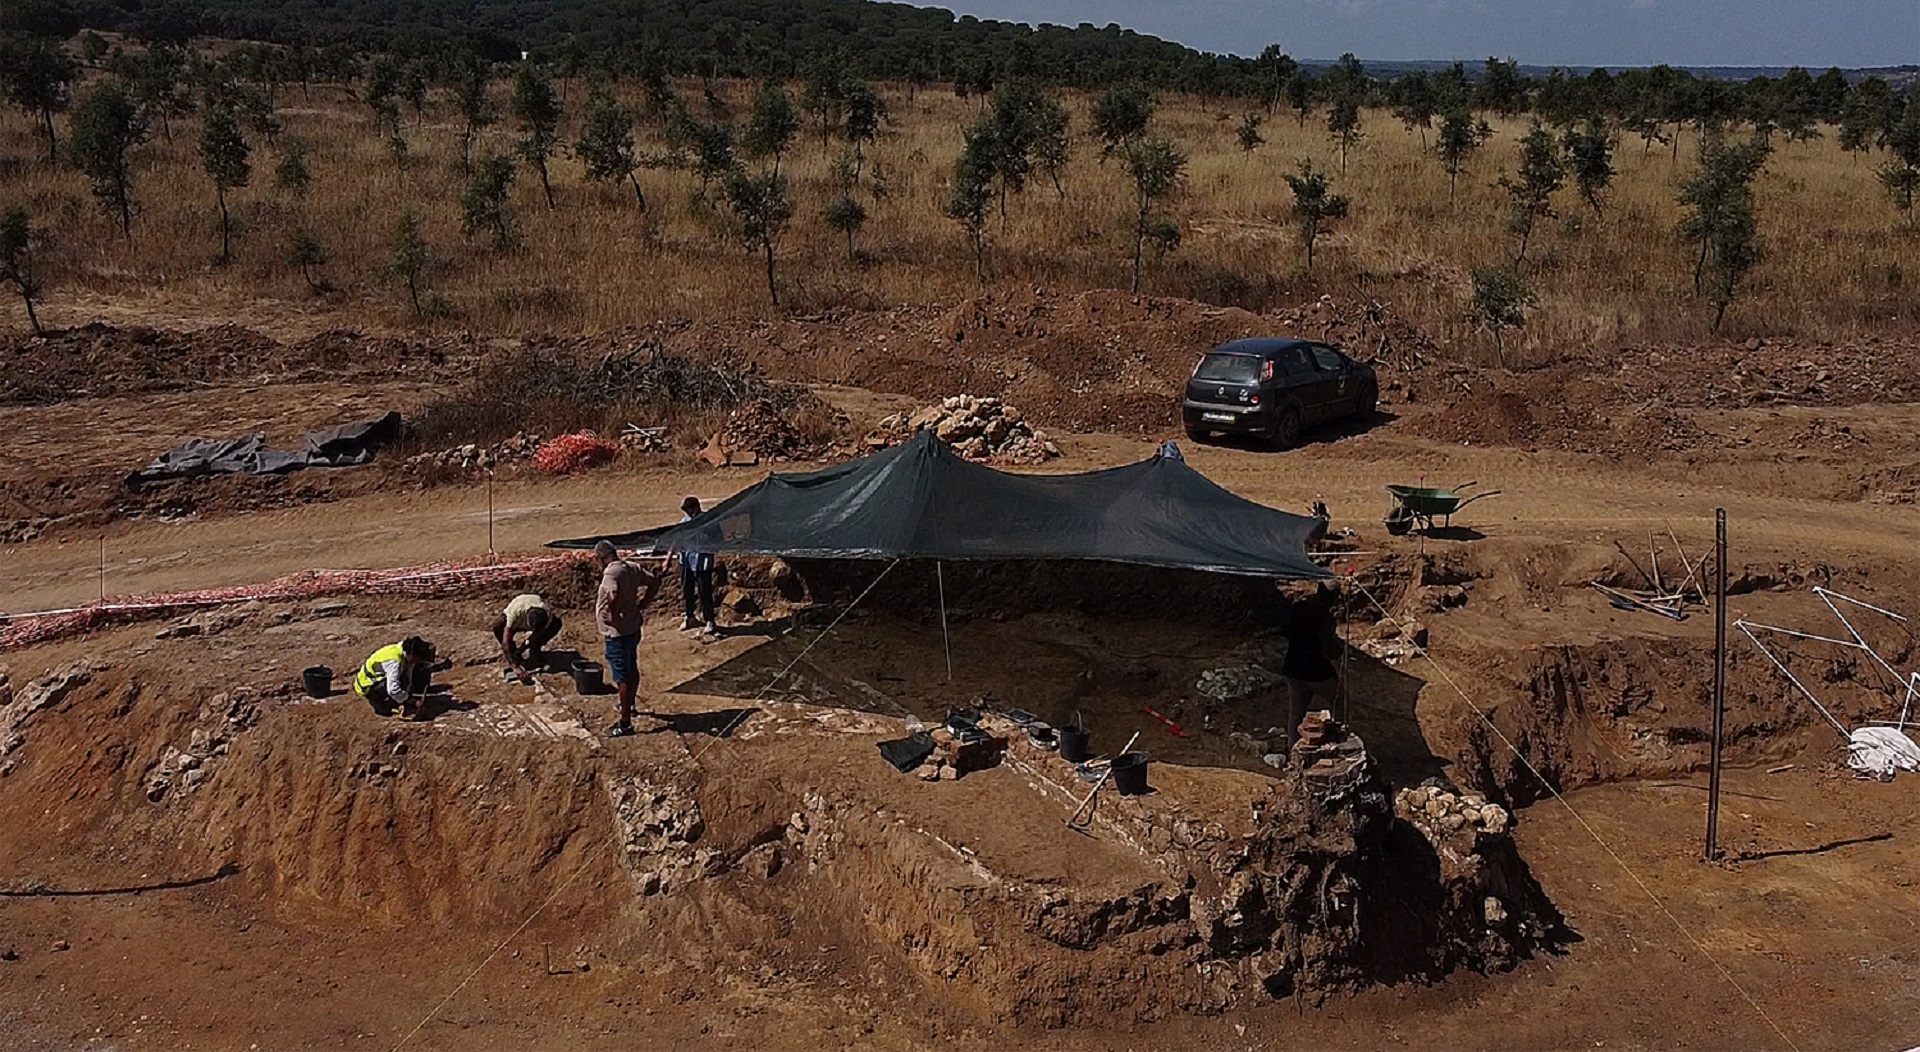 Documentário “A Villa dos Centauros” vai relevar Alcácer do Sal no mapa da arqueologia internacional